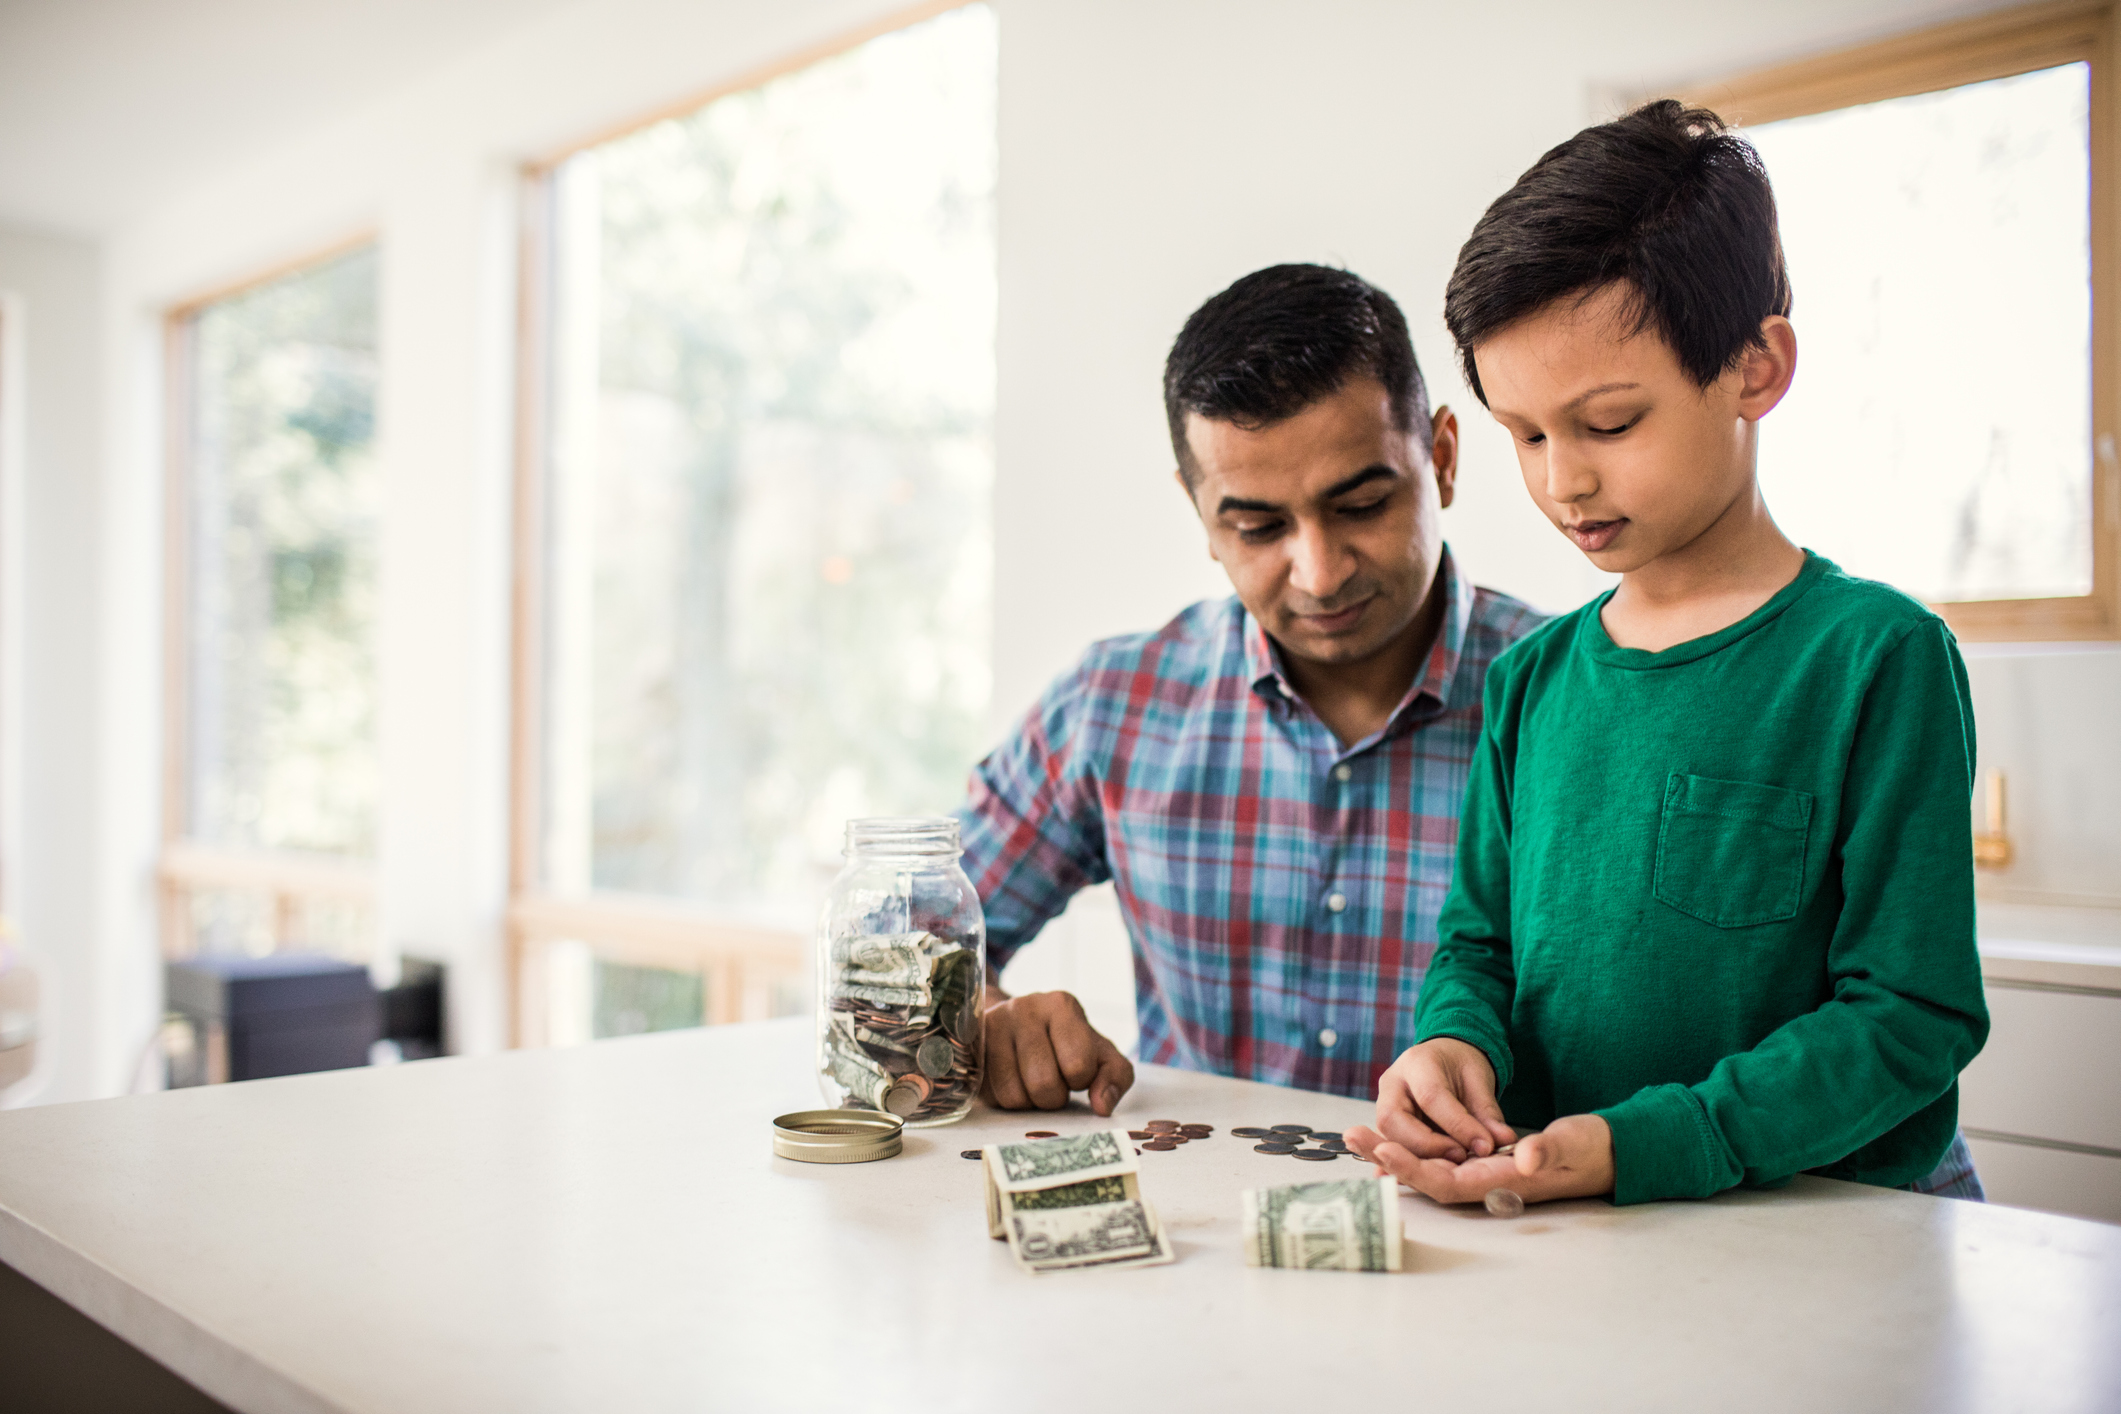 Cómo enseñarles a los niños sobre educación financiera de manera fácil; aplique estos 7 consejos con sus hijos para que tengan buenos hábitos con el dinero.